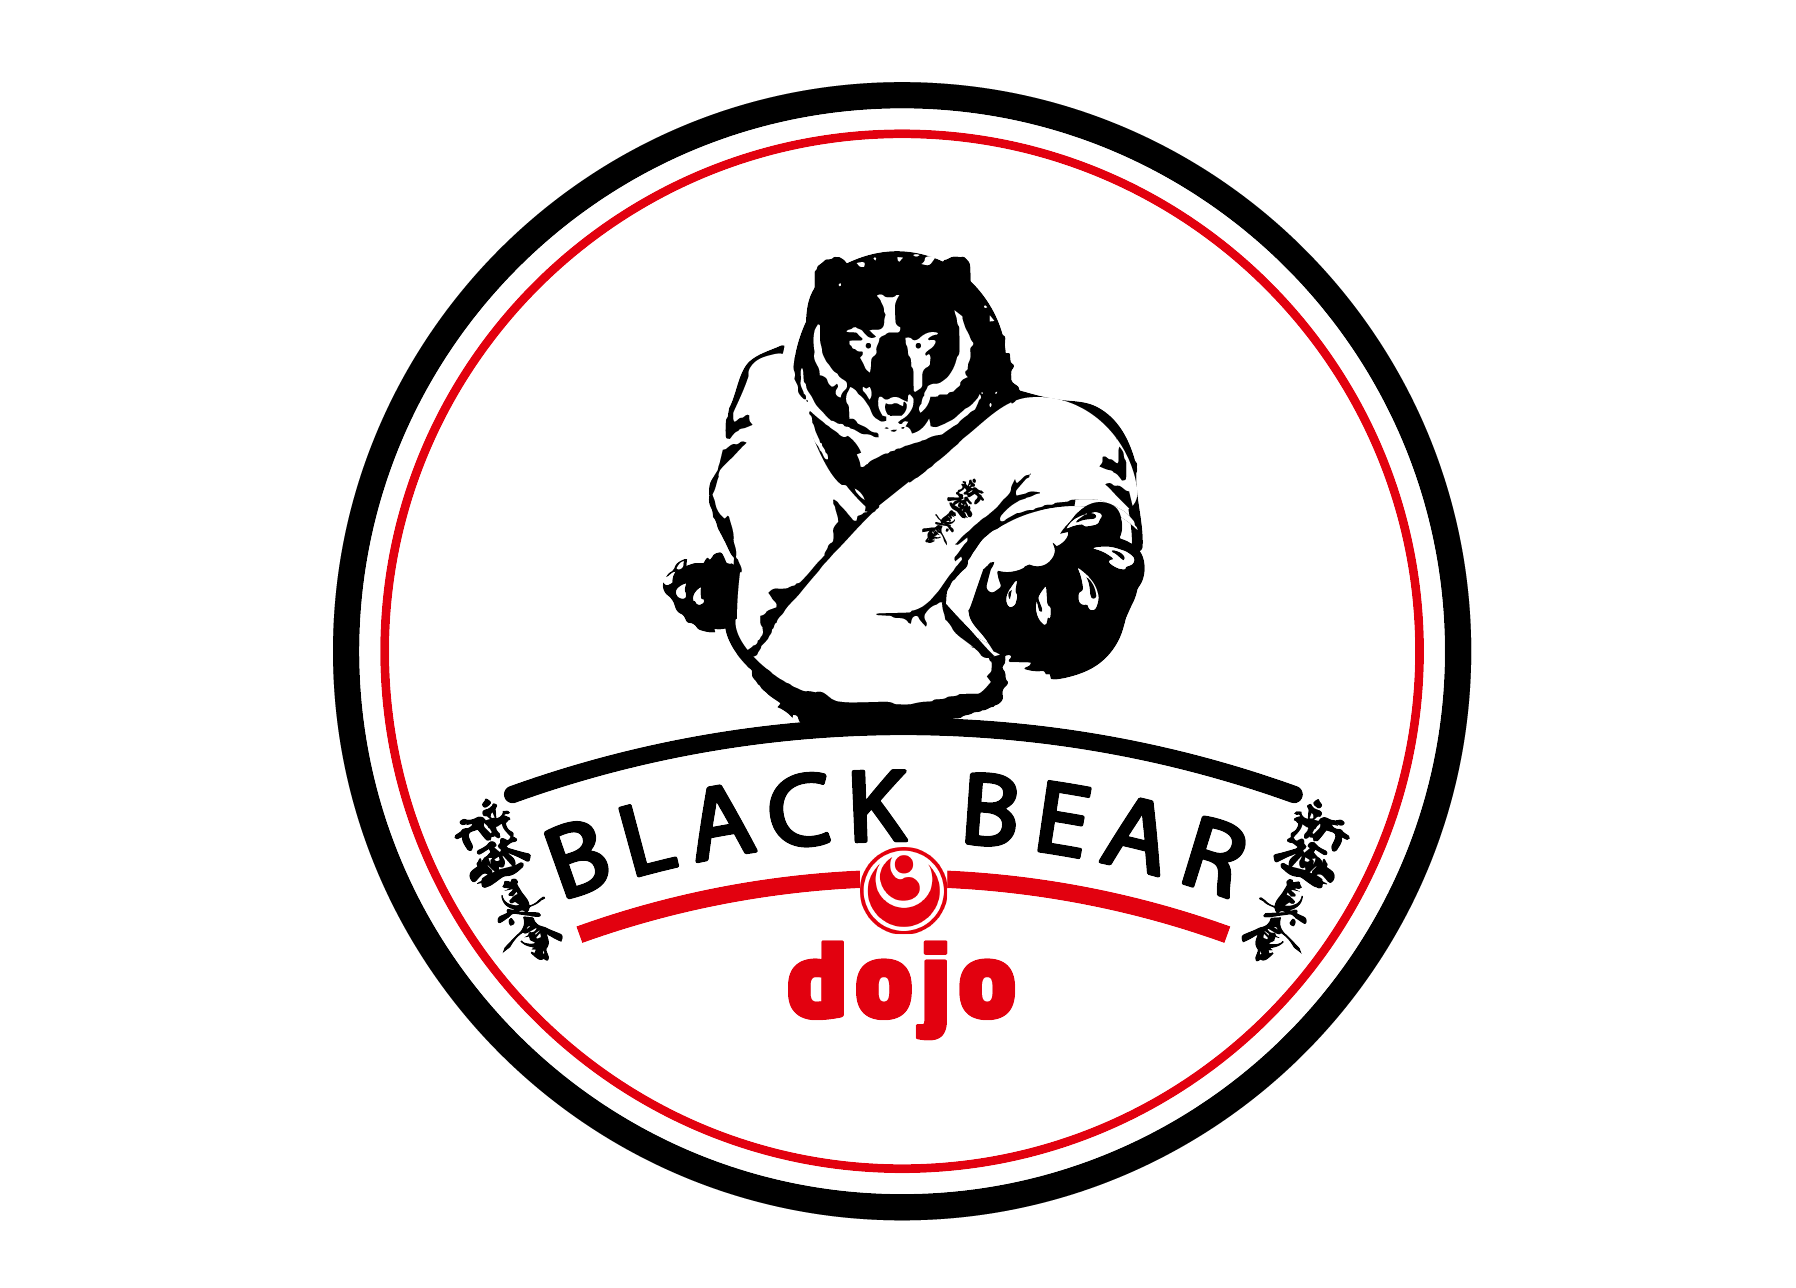 Black Bear Dojo